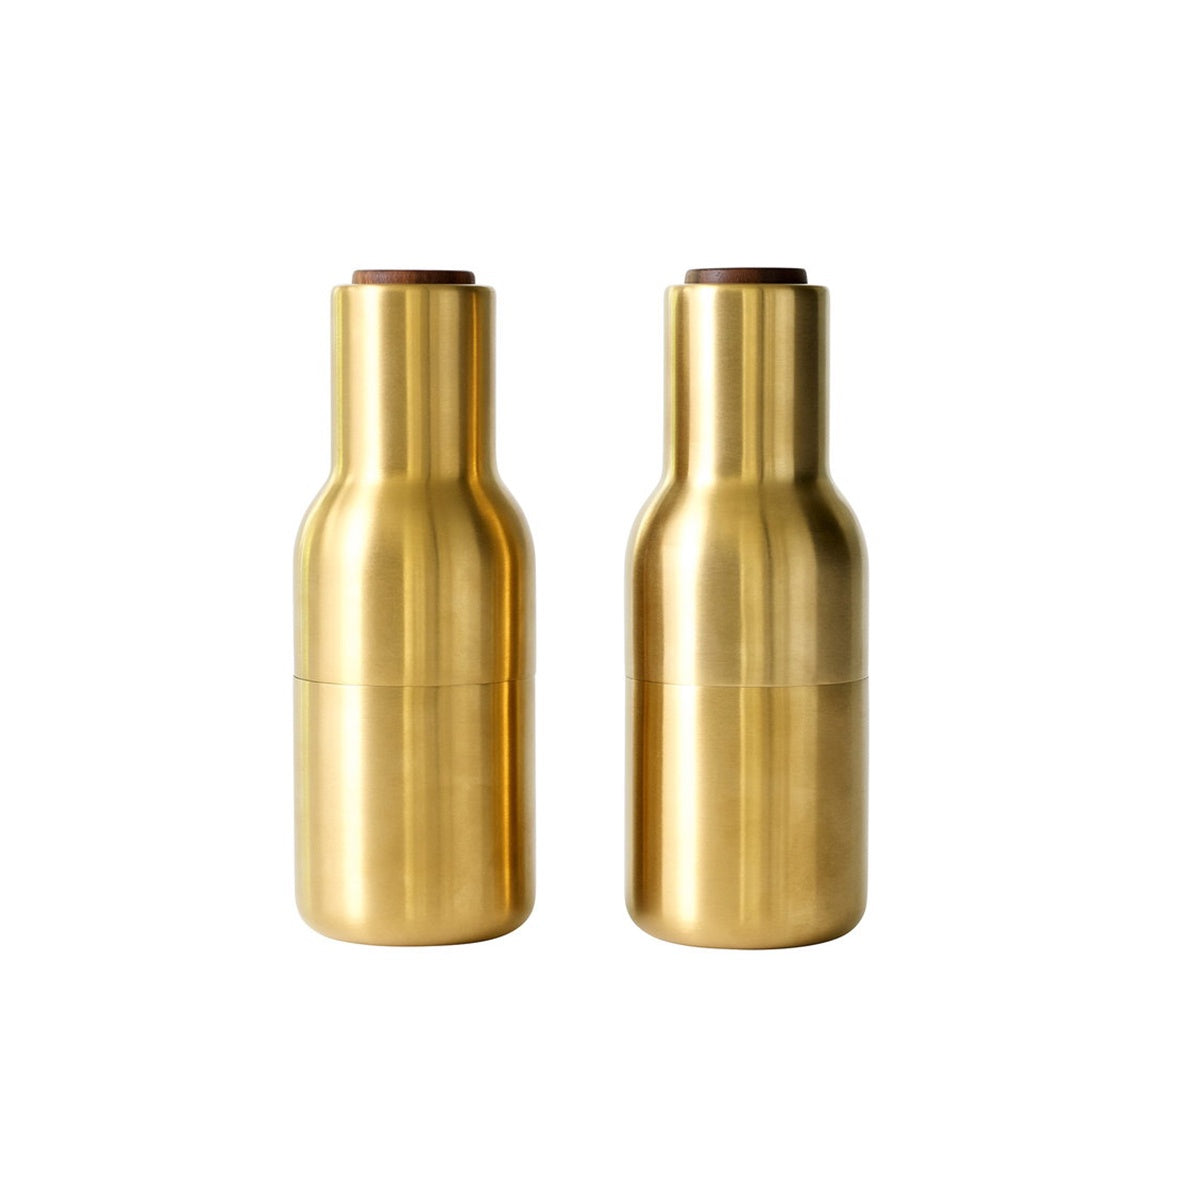 Menu - Bottle Grinder Set, Brushed Brass Gold with Walnut Lid